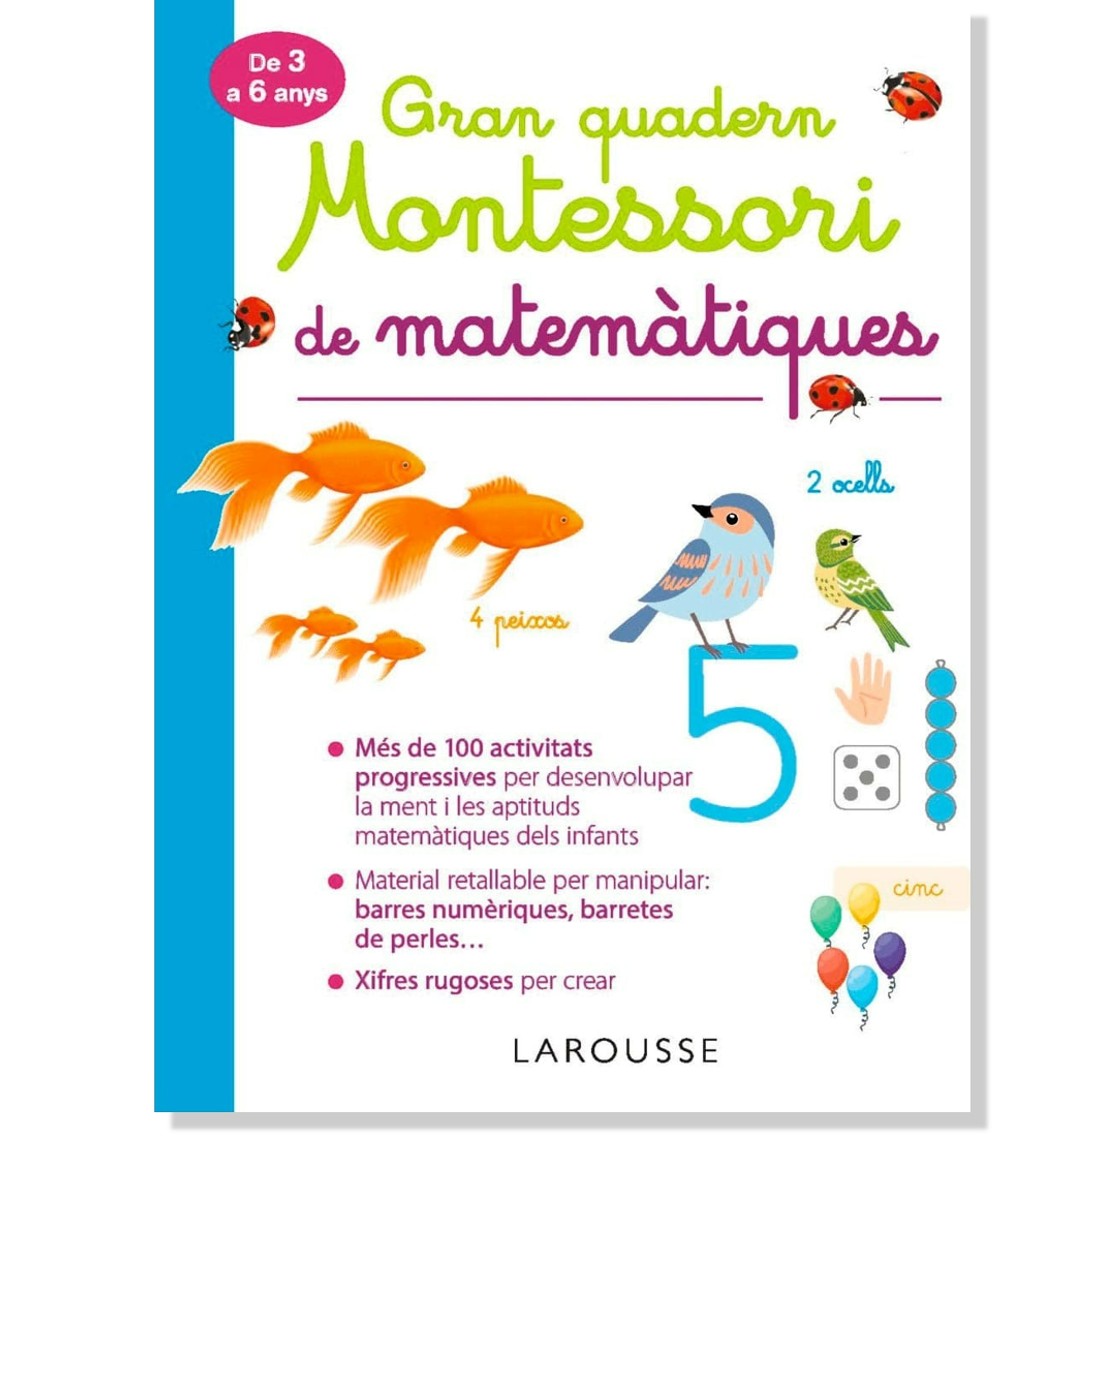 Gran quadern Montessori de matemàtiques